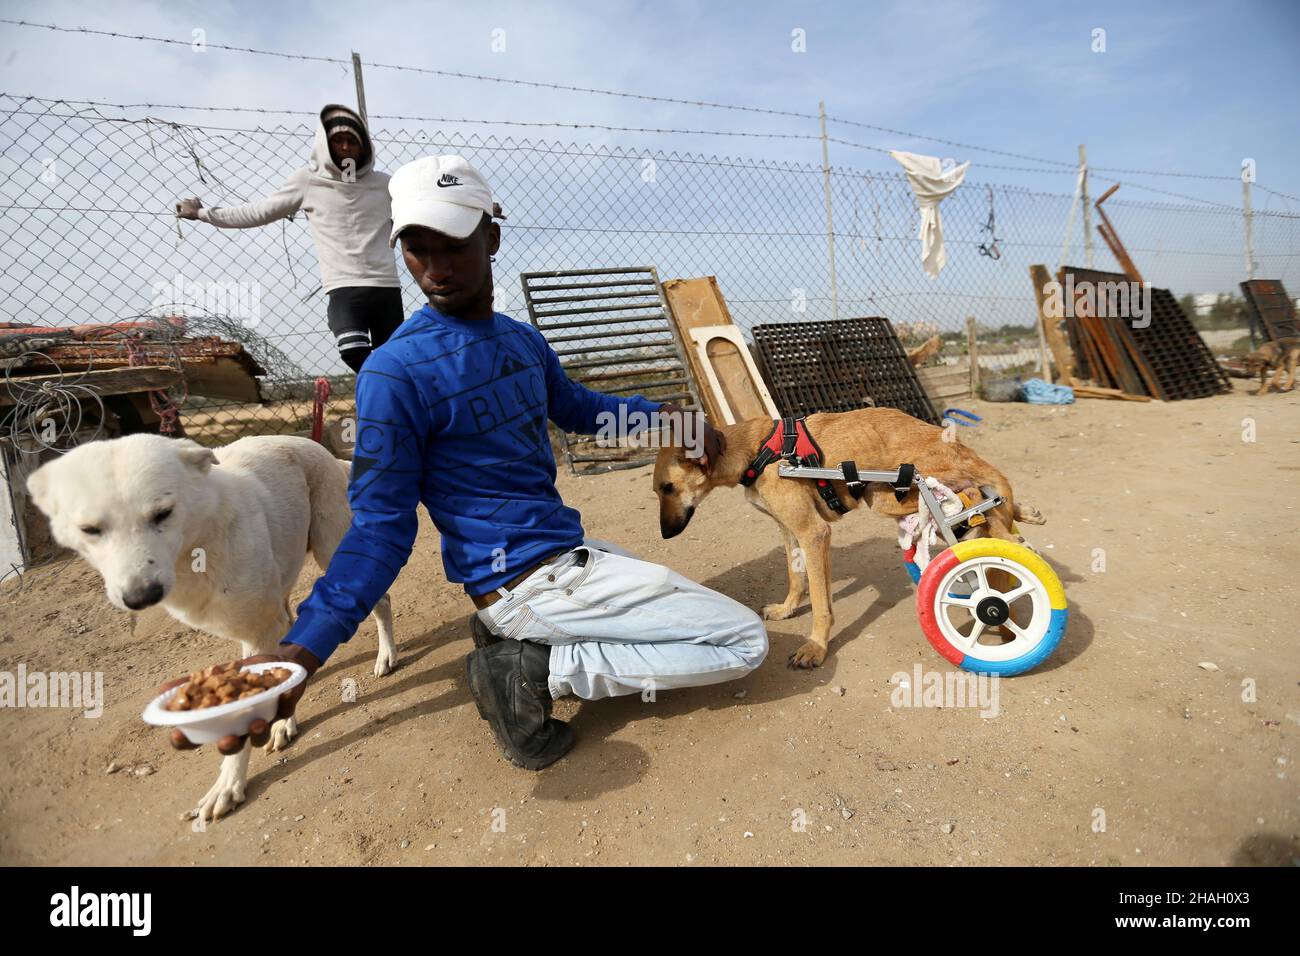 El cuidador de animales palestinos dijo que Al-Aer entrena a un perro paralizado para caminar usando una silla de ruedas nueva mientras alimenta a otro perro en la ciudad de Gaza el 6 de diciembre de 2021. Fue un momento de congelación para Lucy, cuando los cuidadores de animales le pusieron una silla de ruedas para ayudarla a moverse de nuevo. Said Al-Aer trabaja con su padre para cuidar de 300 perros callejeros y 80 gatos. Foto tomada el 6 de diciembre de 2021. REUTERS/Ibraheem Abu Mustafa Foto de stock